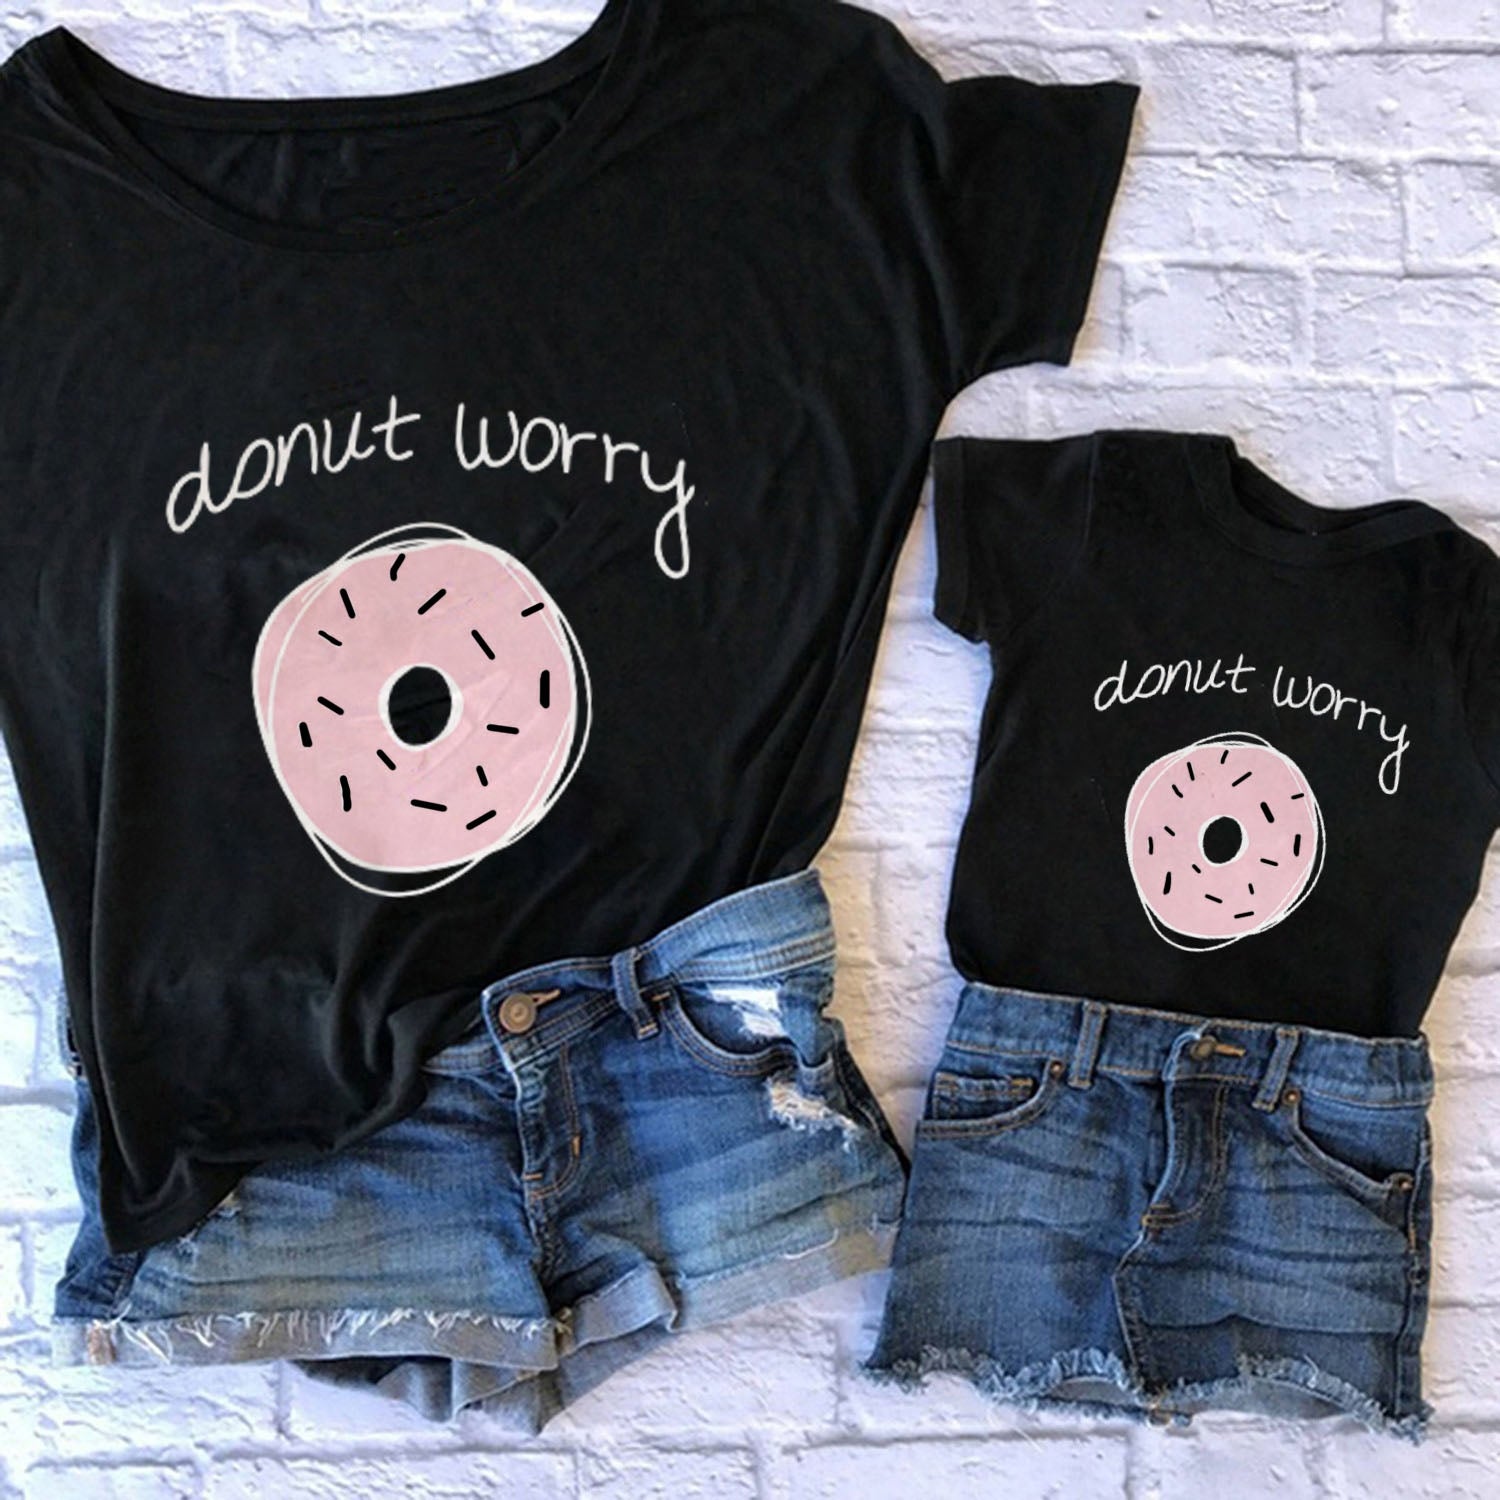 Camiseta Donut worry